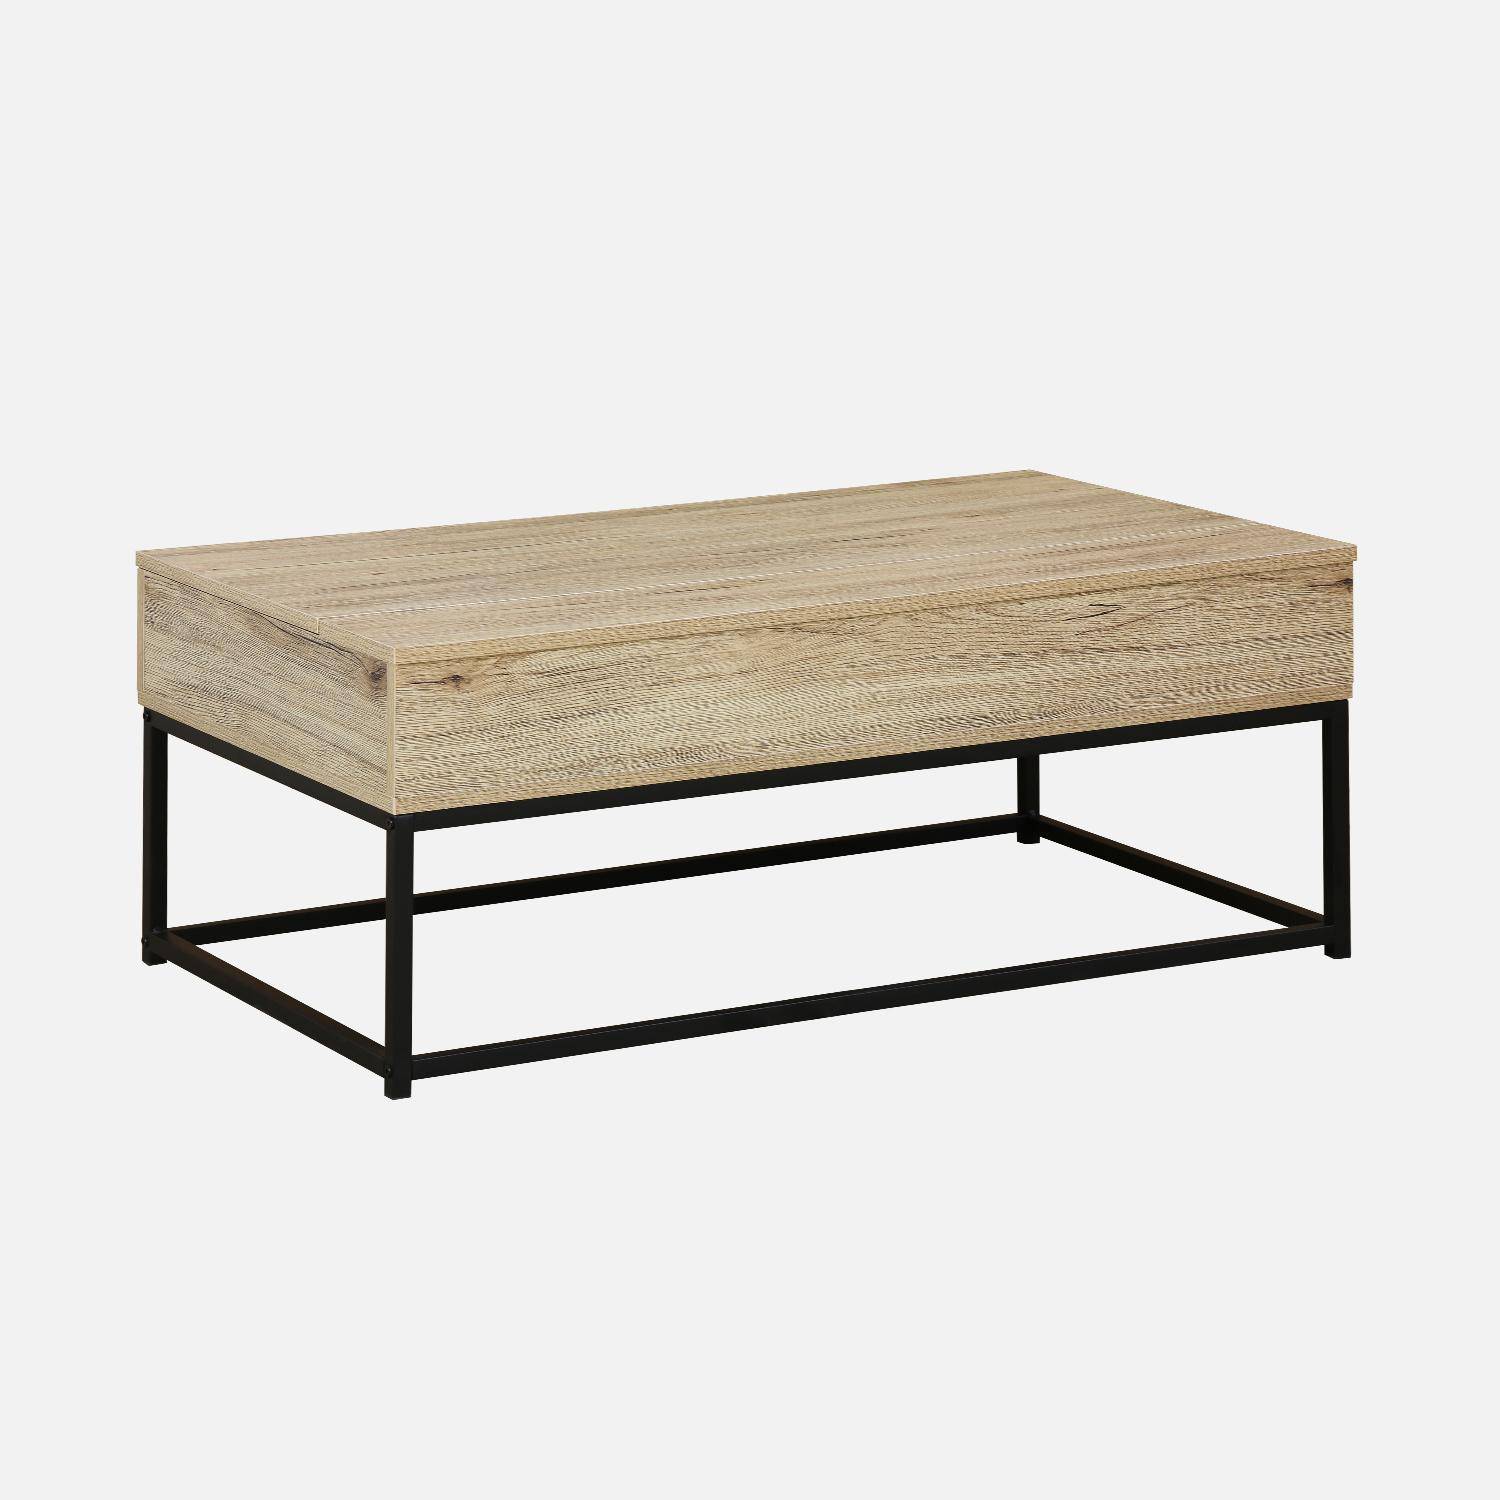 Table basse, loft, 1 plateau relevable, deux espaces de rangement, L 100 cm x l 55 cm x H 40,5 cm Photo1